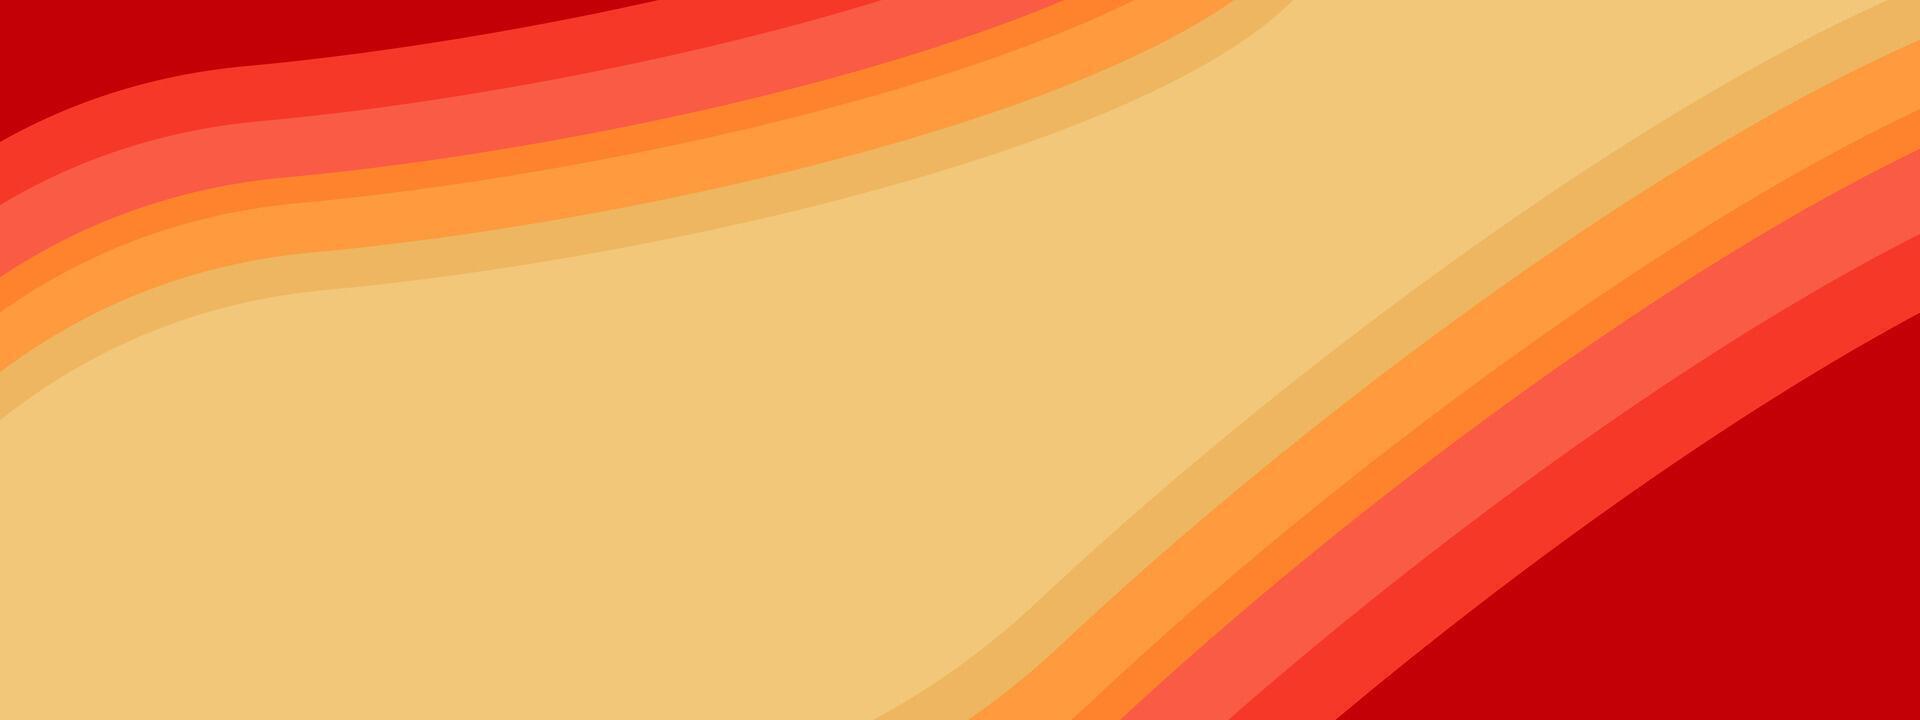 brillant multicolore Contexte avec Orange et rose rayures. de bonne humeur bannière pour fonds d'écran, affiches, site Internet conception. vecteur